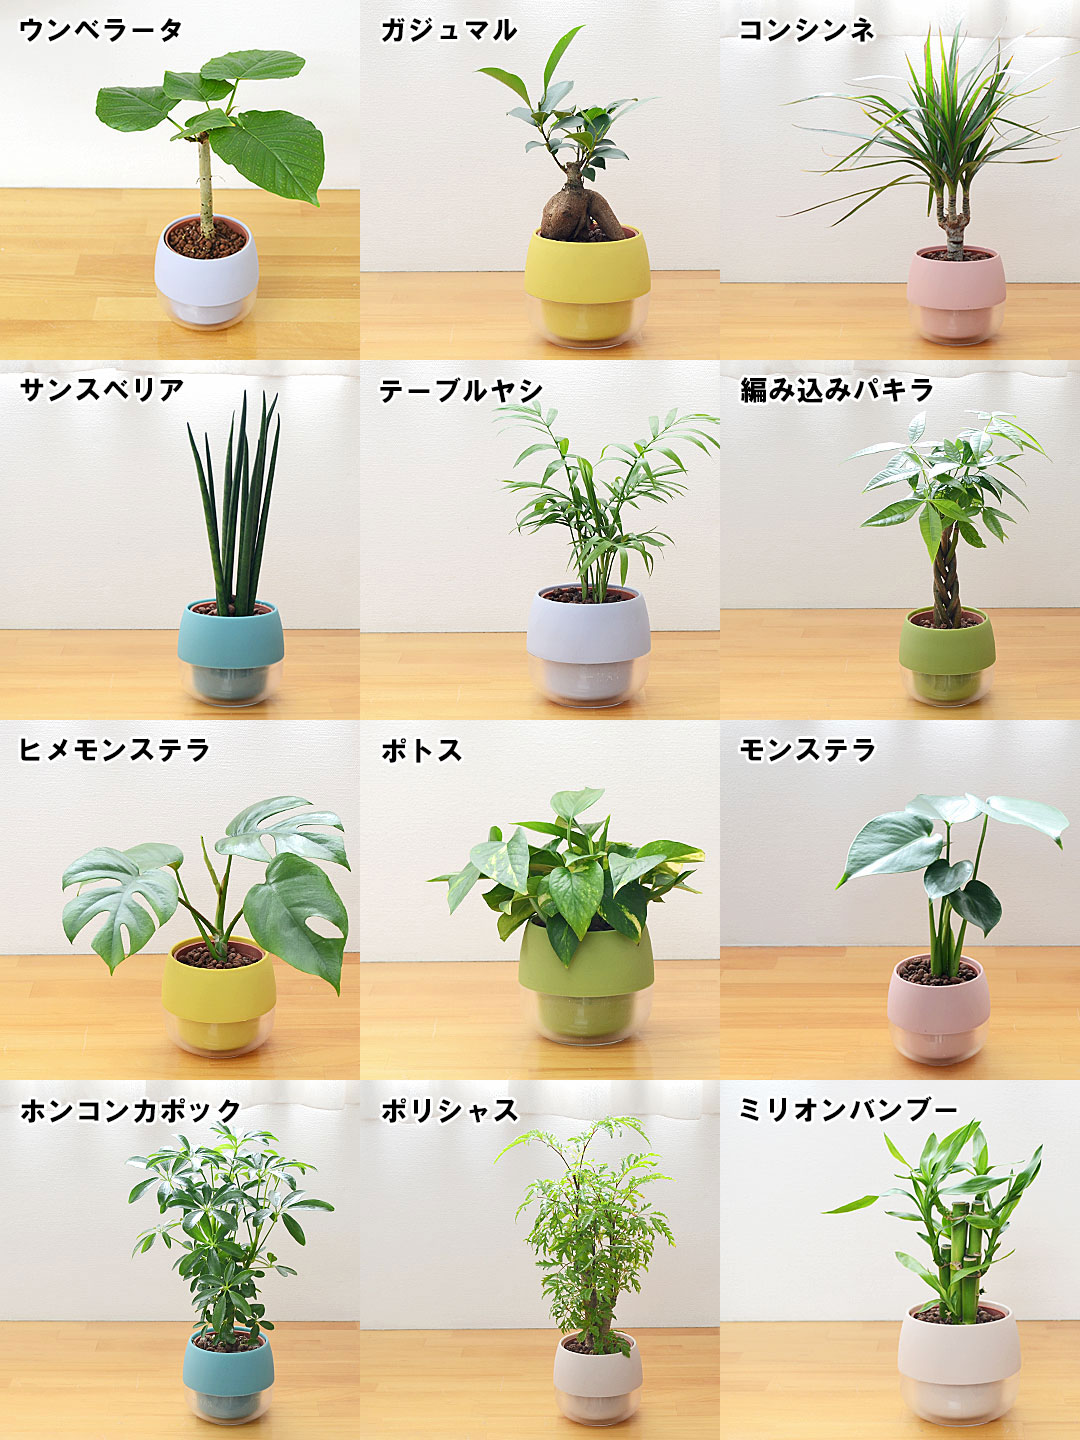 ミニ観葉植物 ハイロドカルチャー 3鉢セット 観葉植物の種類